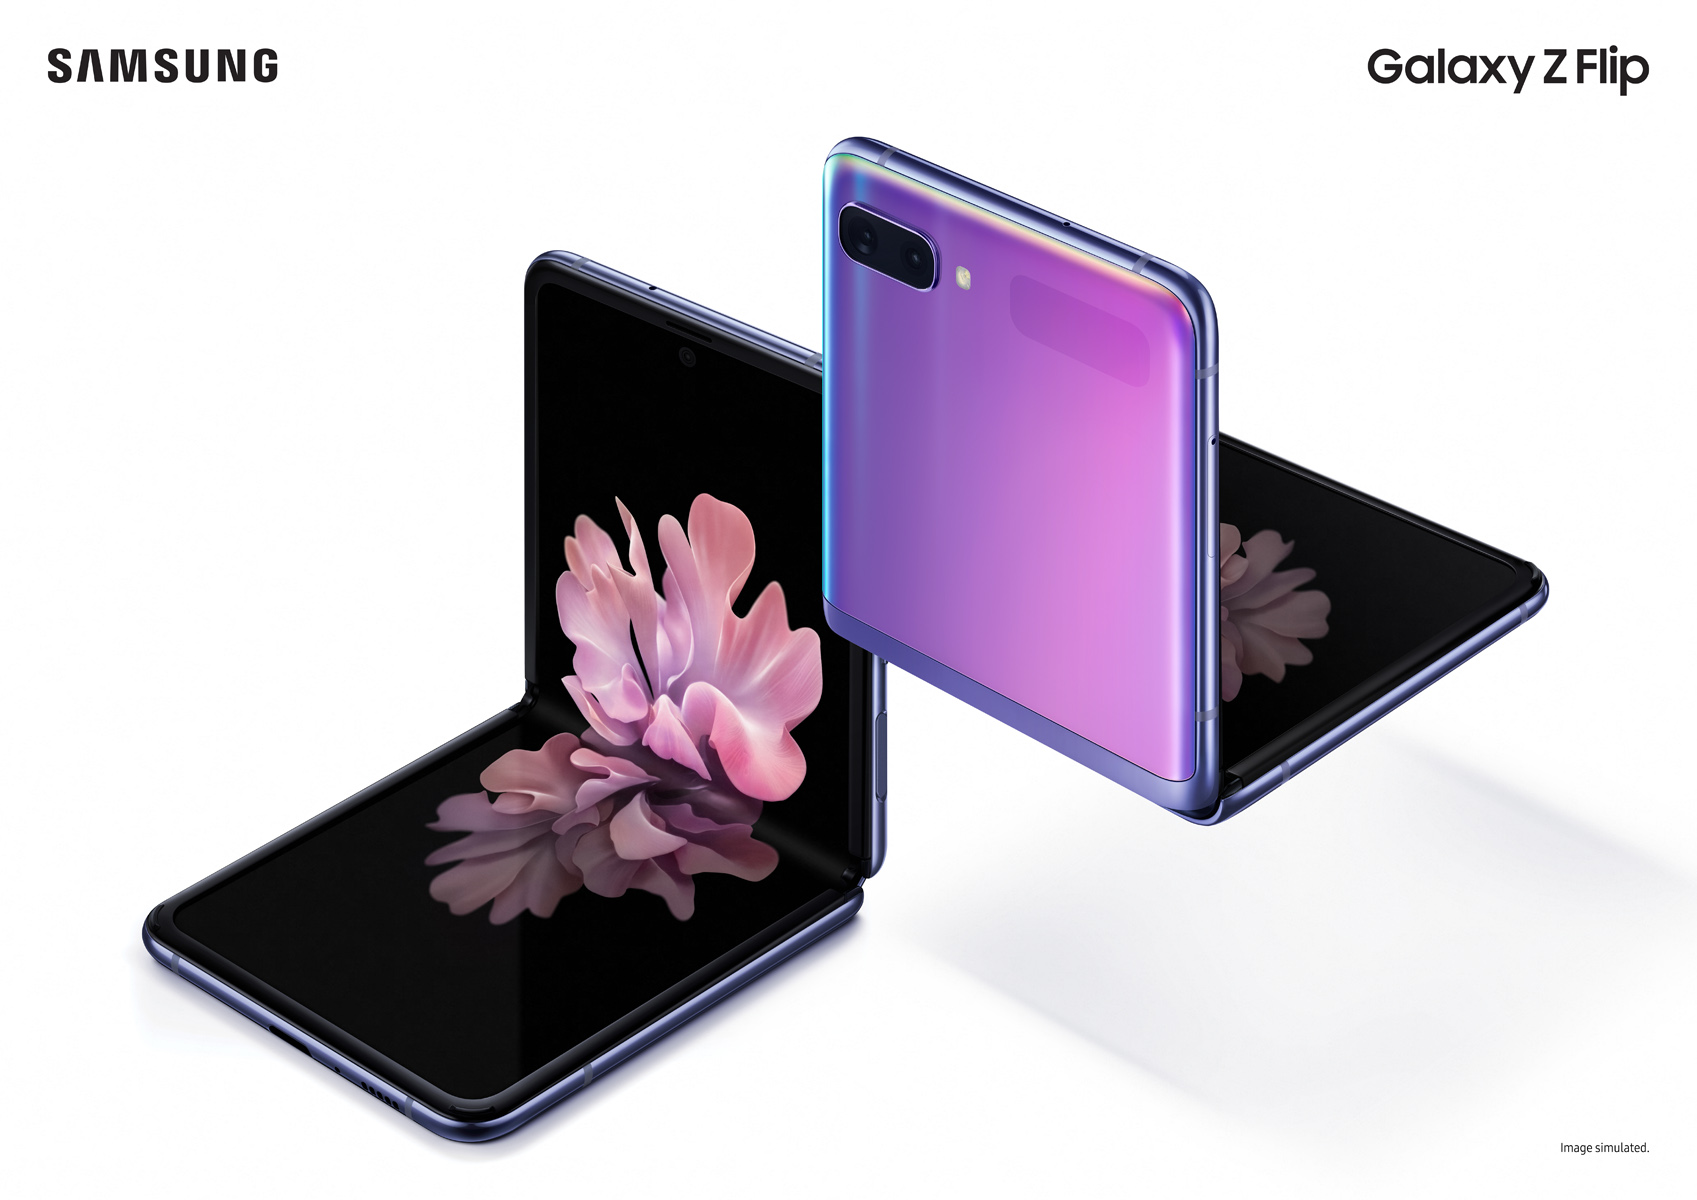 Galaxy Z Flip chính
thức ra mắt với màn hình gập theo chiều dọc, Snapdragon
855+, giá 32.1 trệu